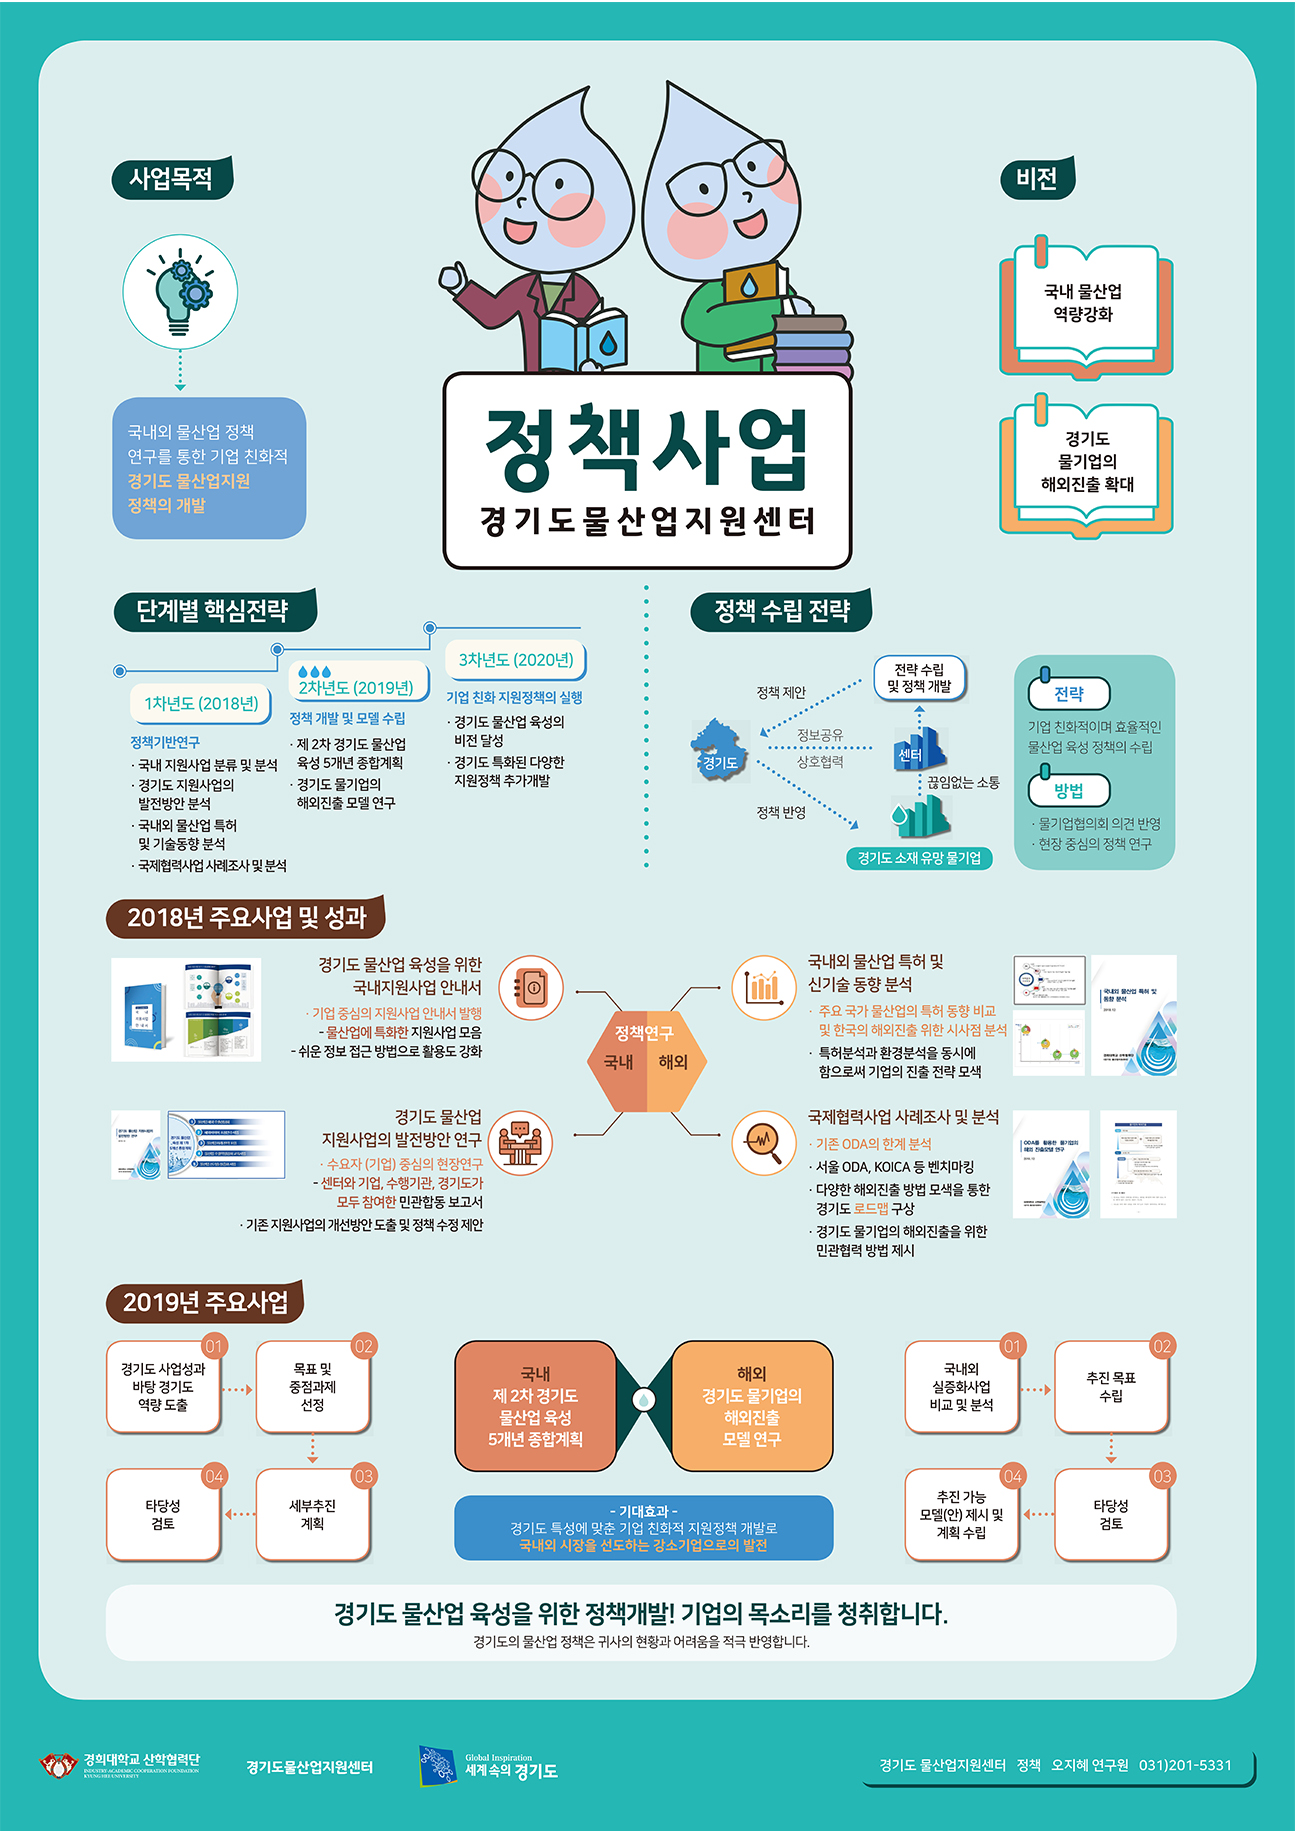 경기도 물산업지원센터 물산업정책 소개 포스터 